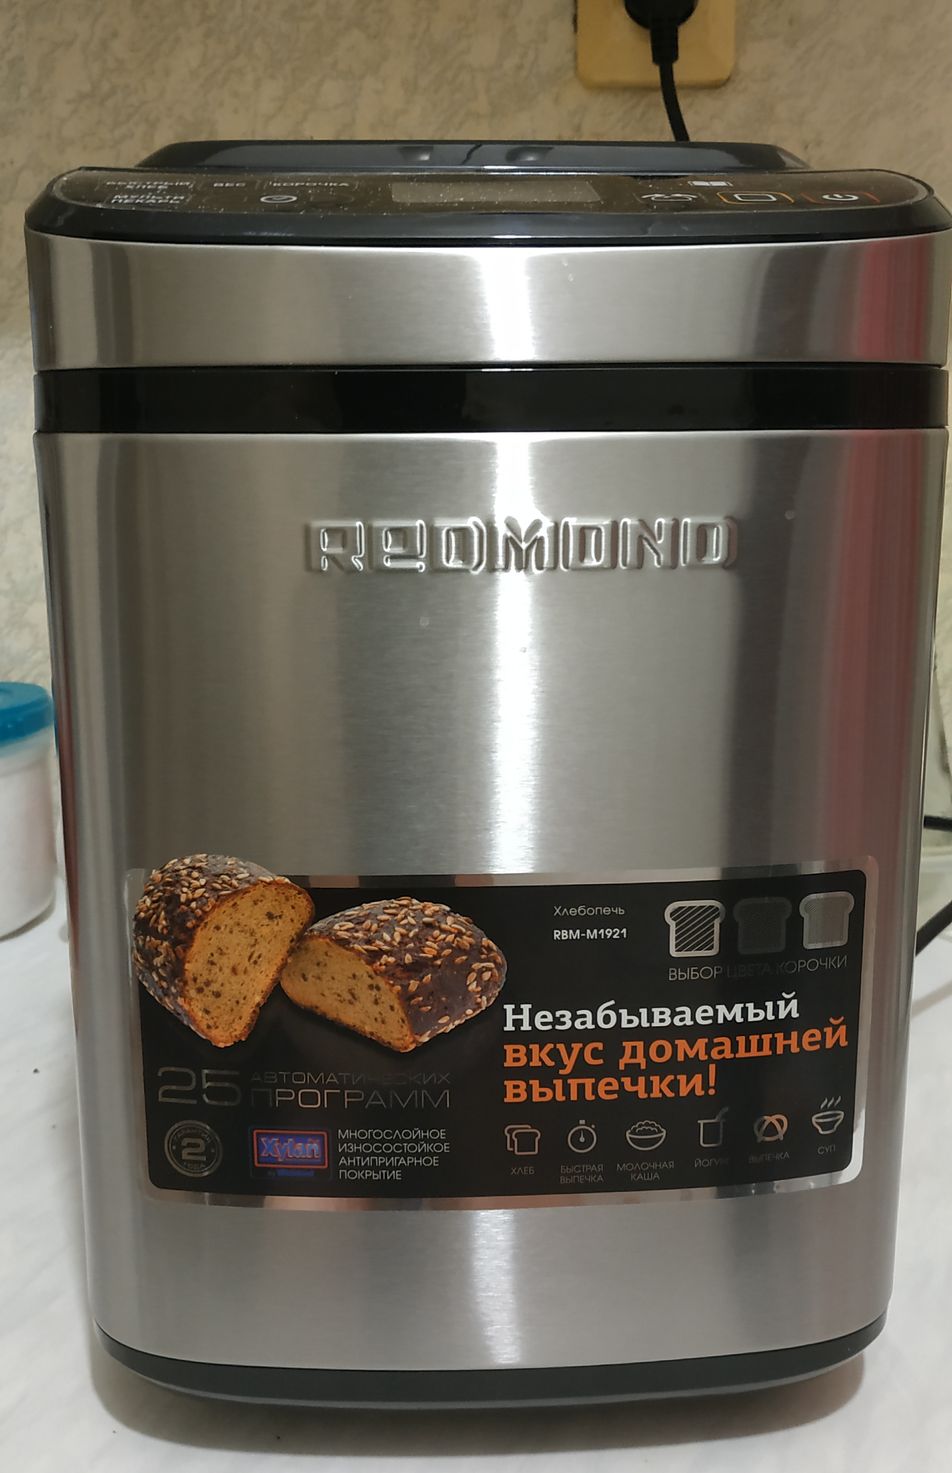 Хлебопечки Redmond - популярные поломки и неисправности